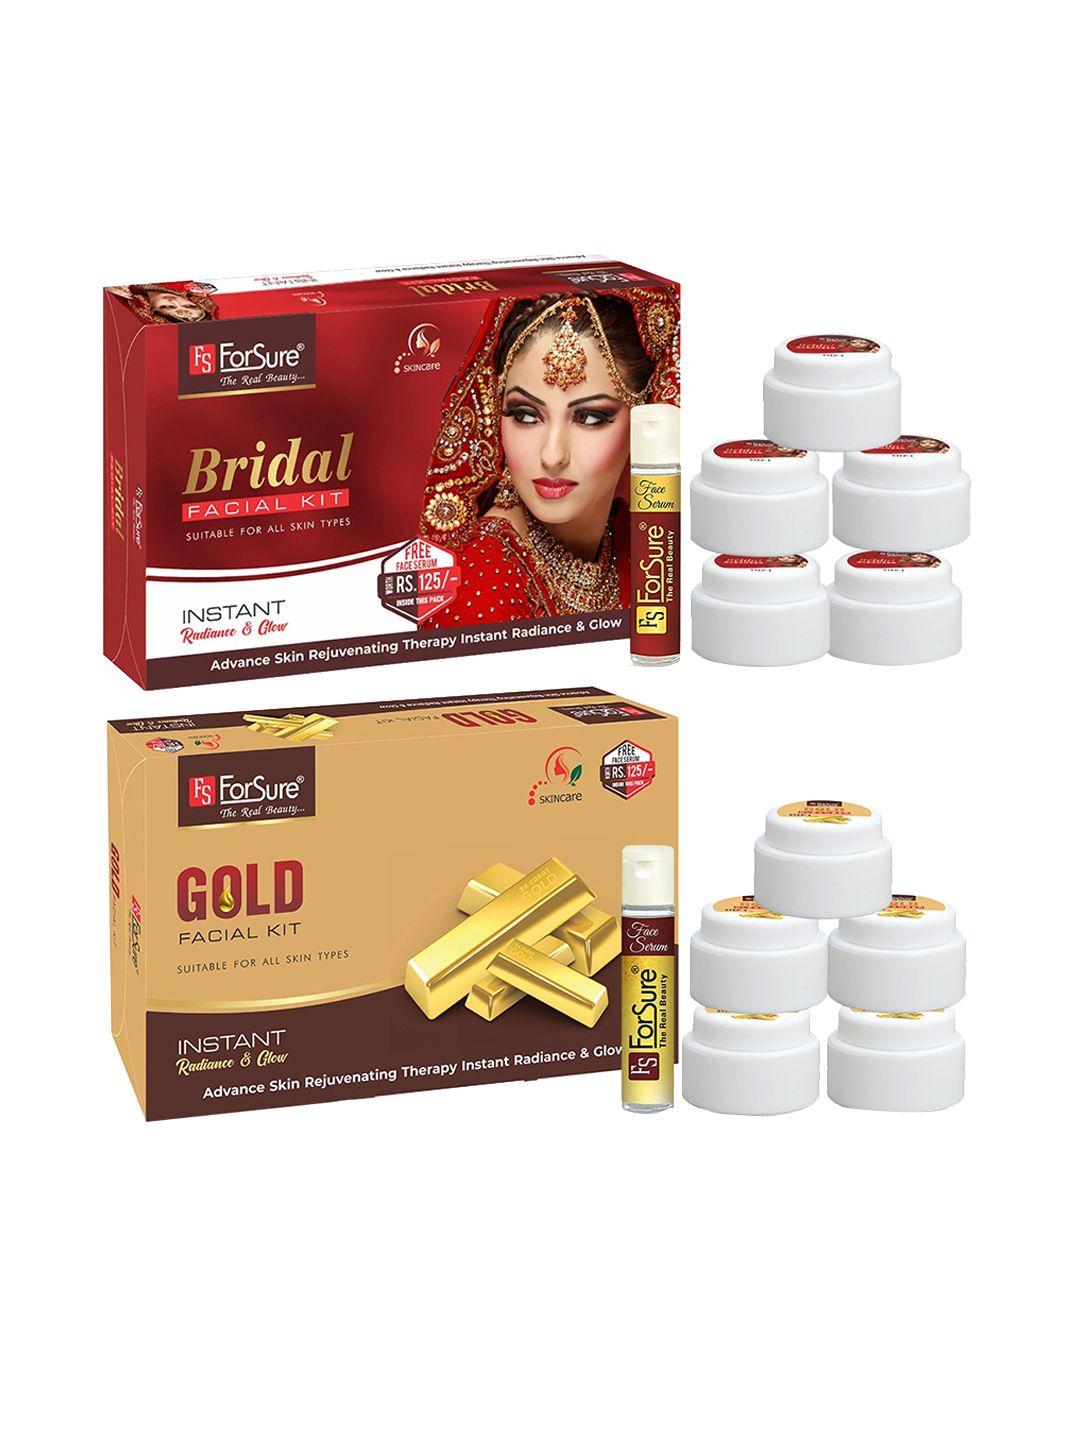 forsure set of bridal & gold facial kits - 80 g each